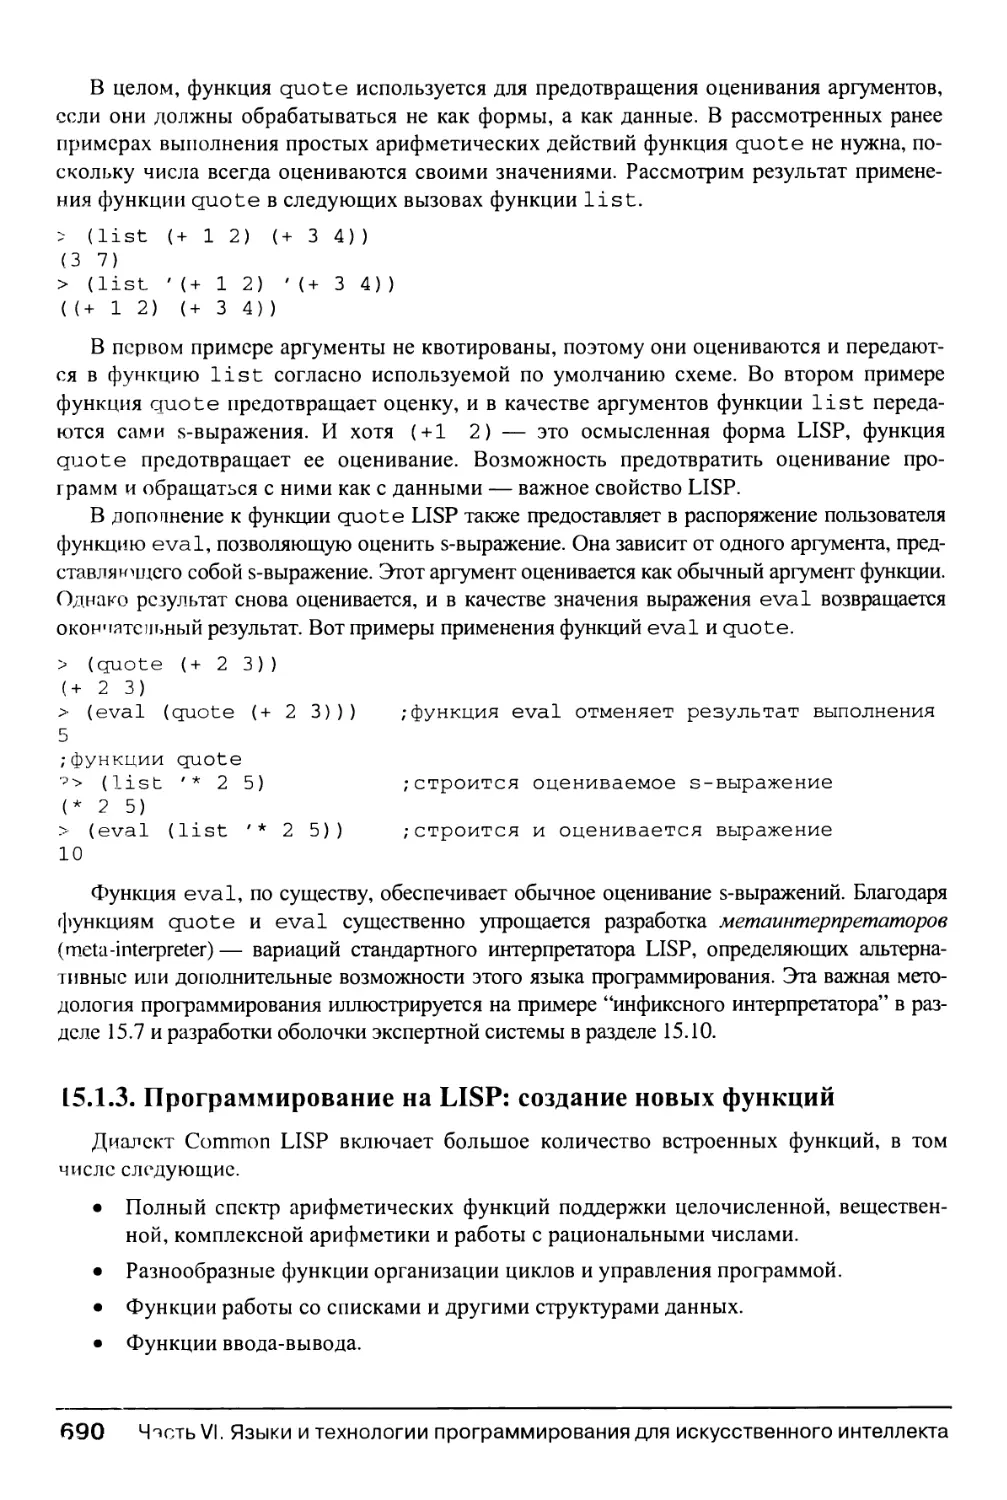 15.1.3. Программирование на LISP: создание новых функций